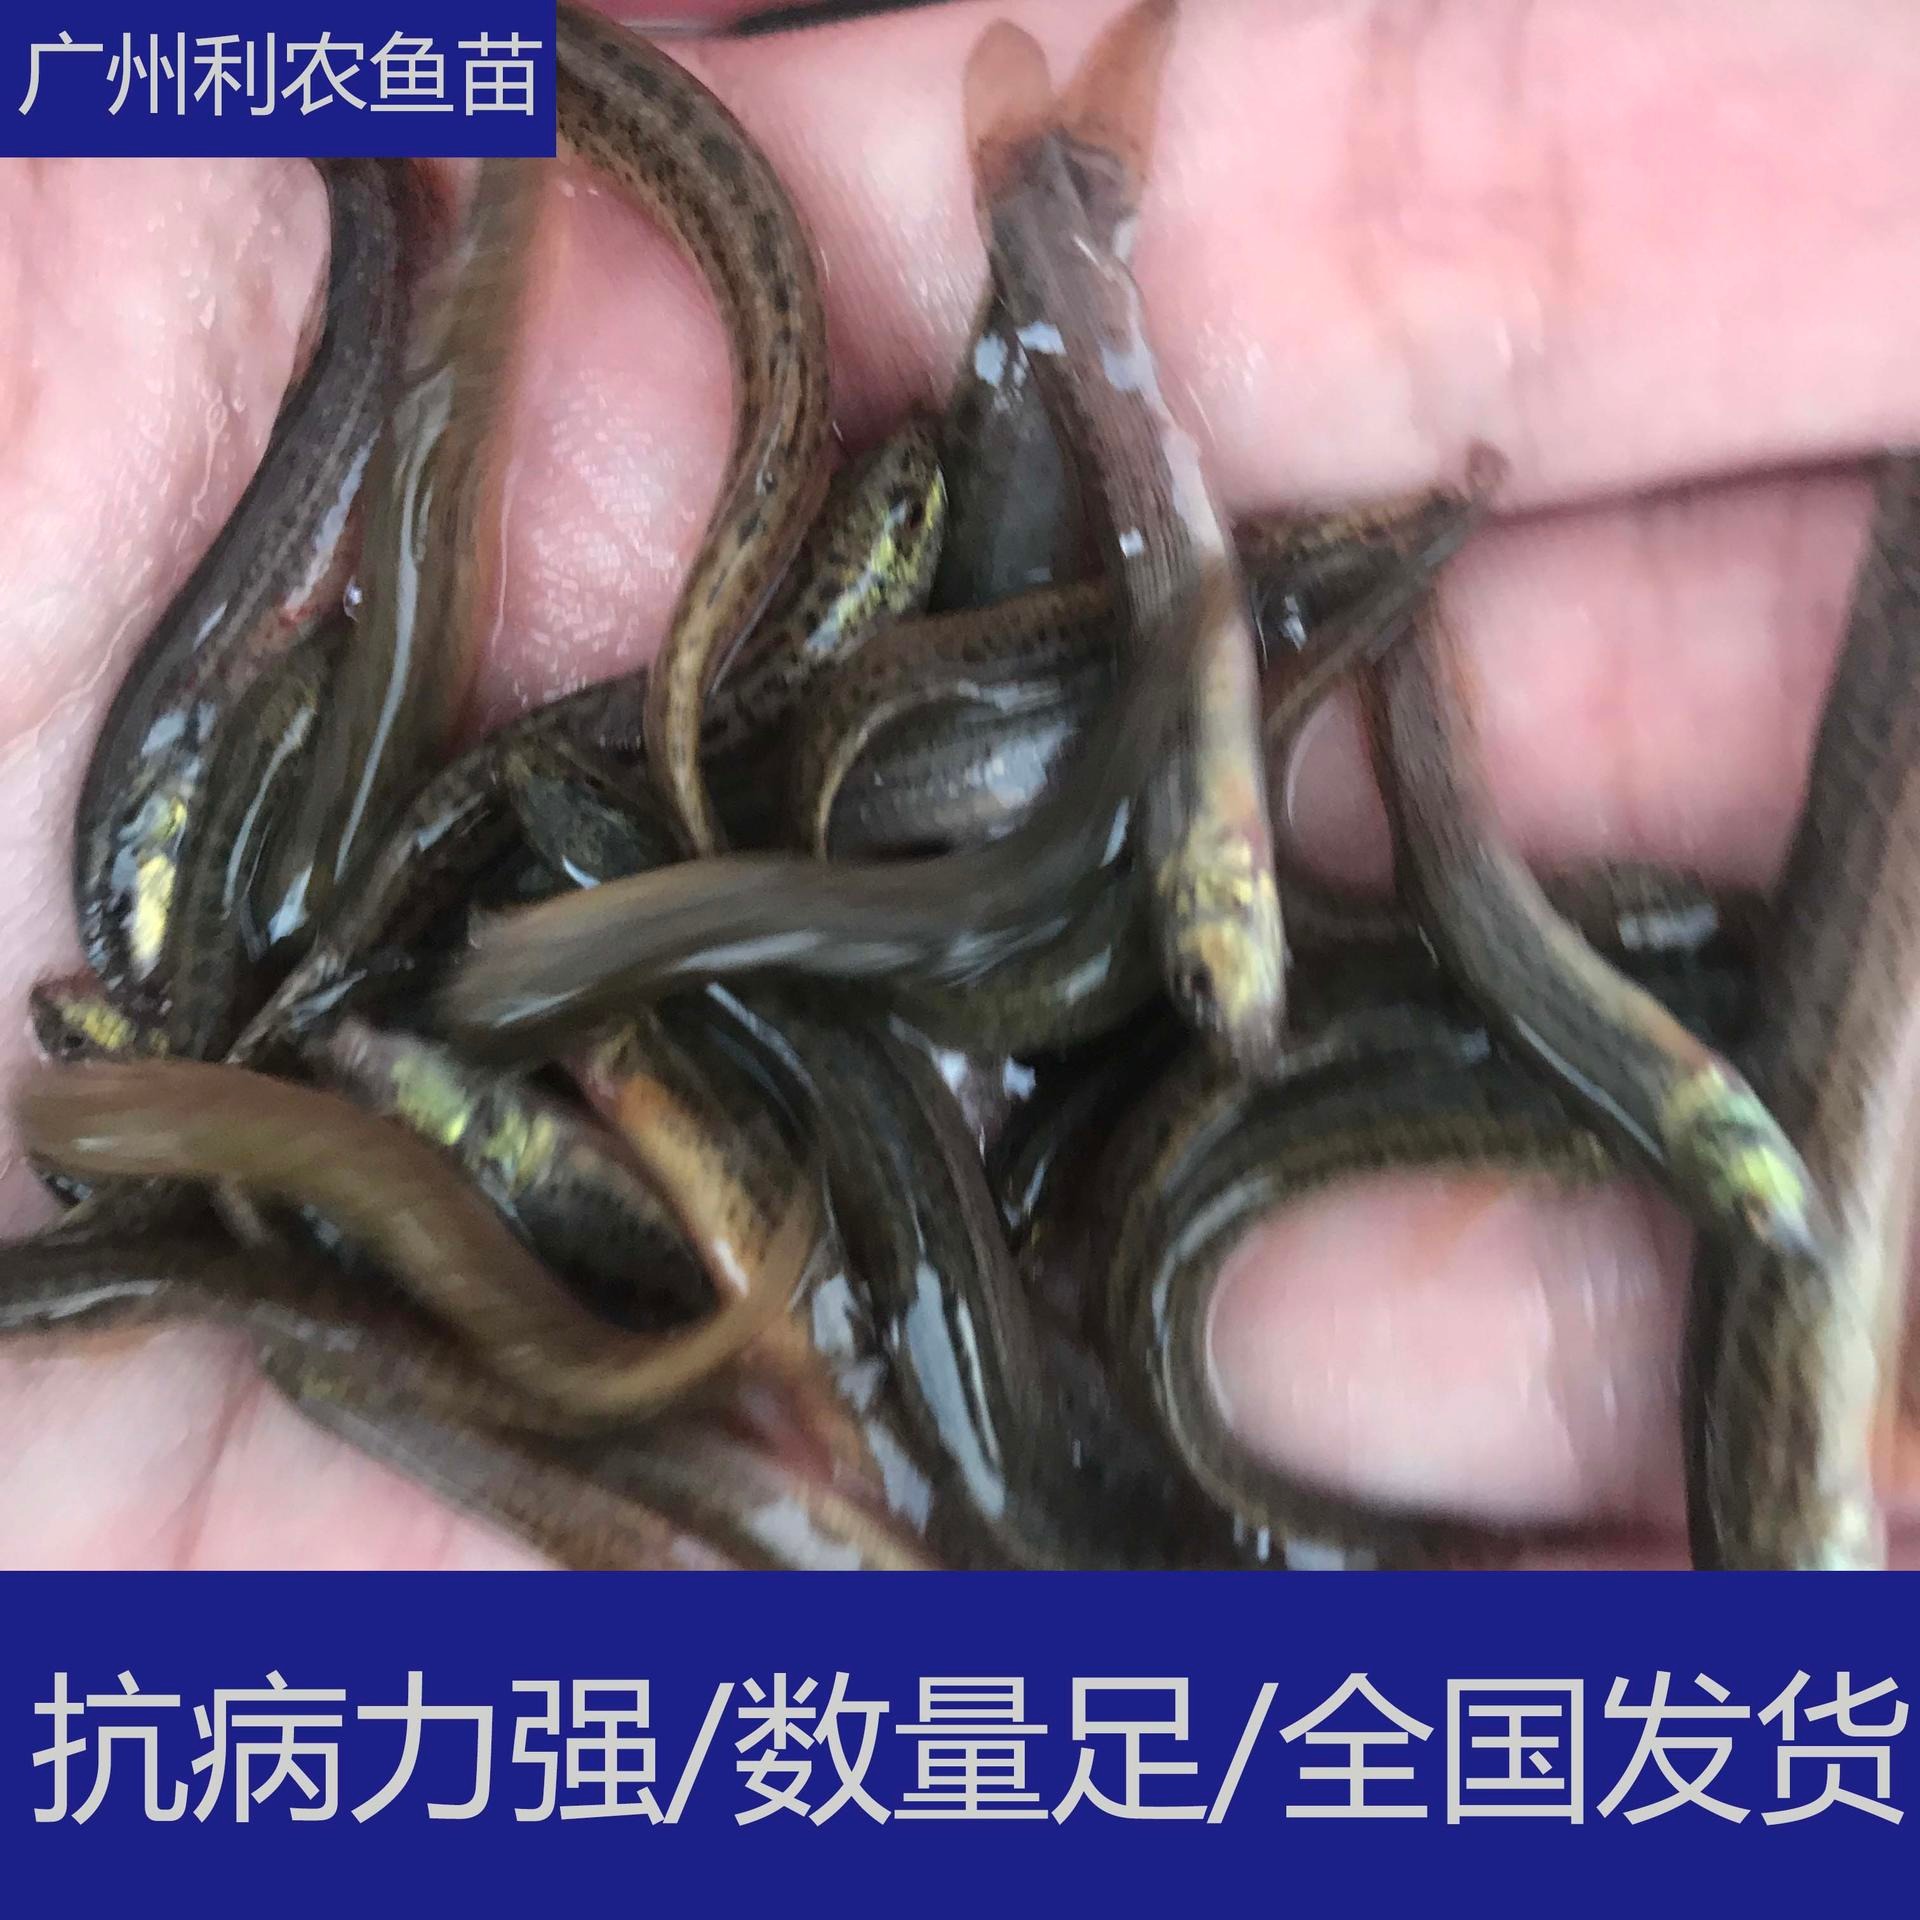 易养殖 广东东莞台湾泥鳅苗出售 5-6cm泥鳅鱼苗养殖场